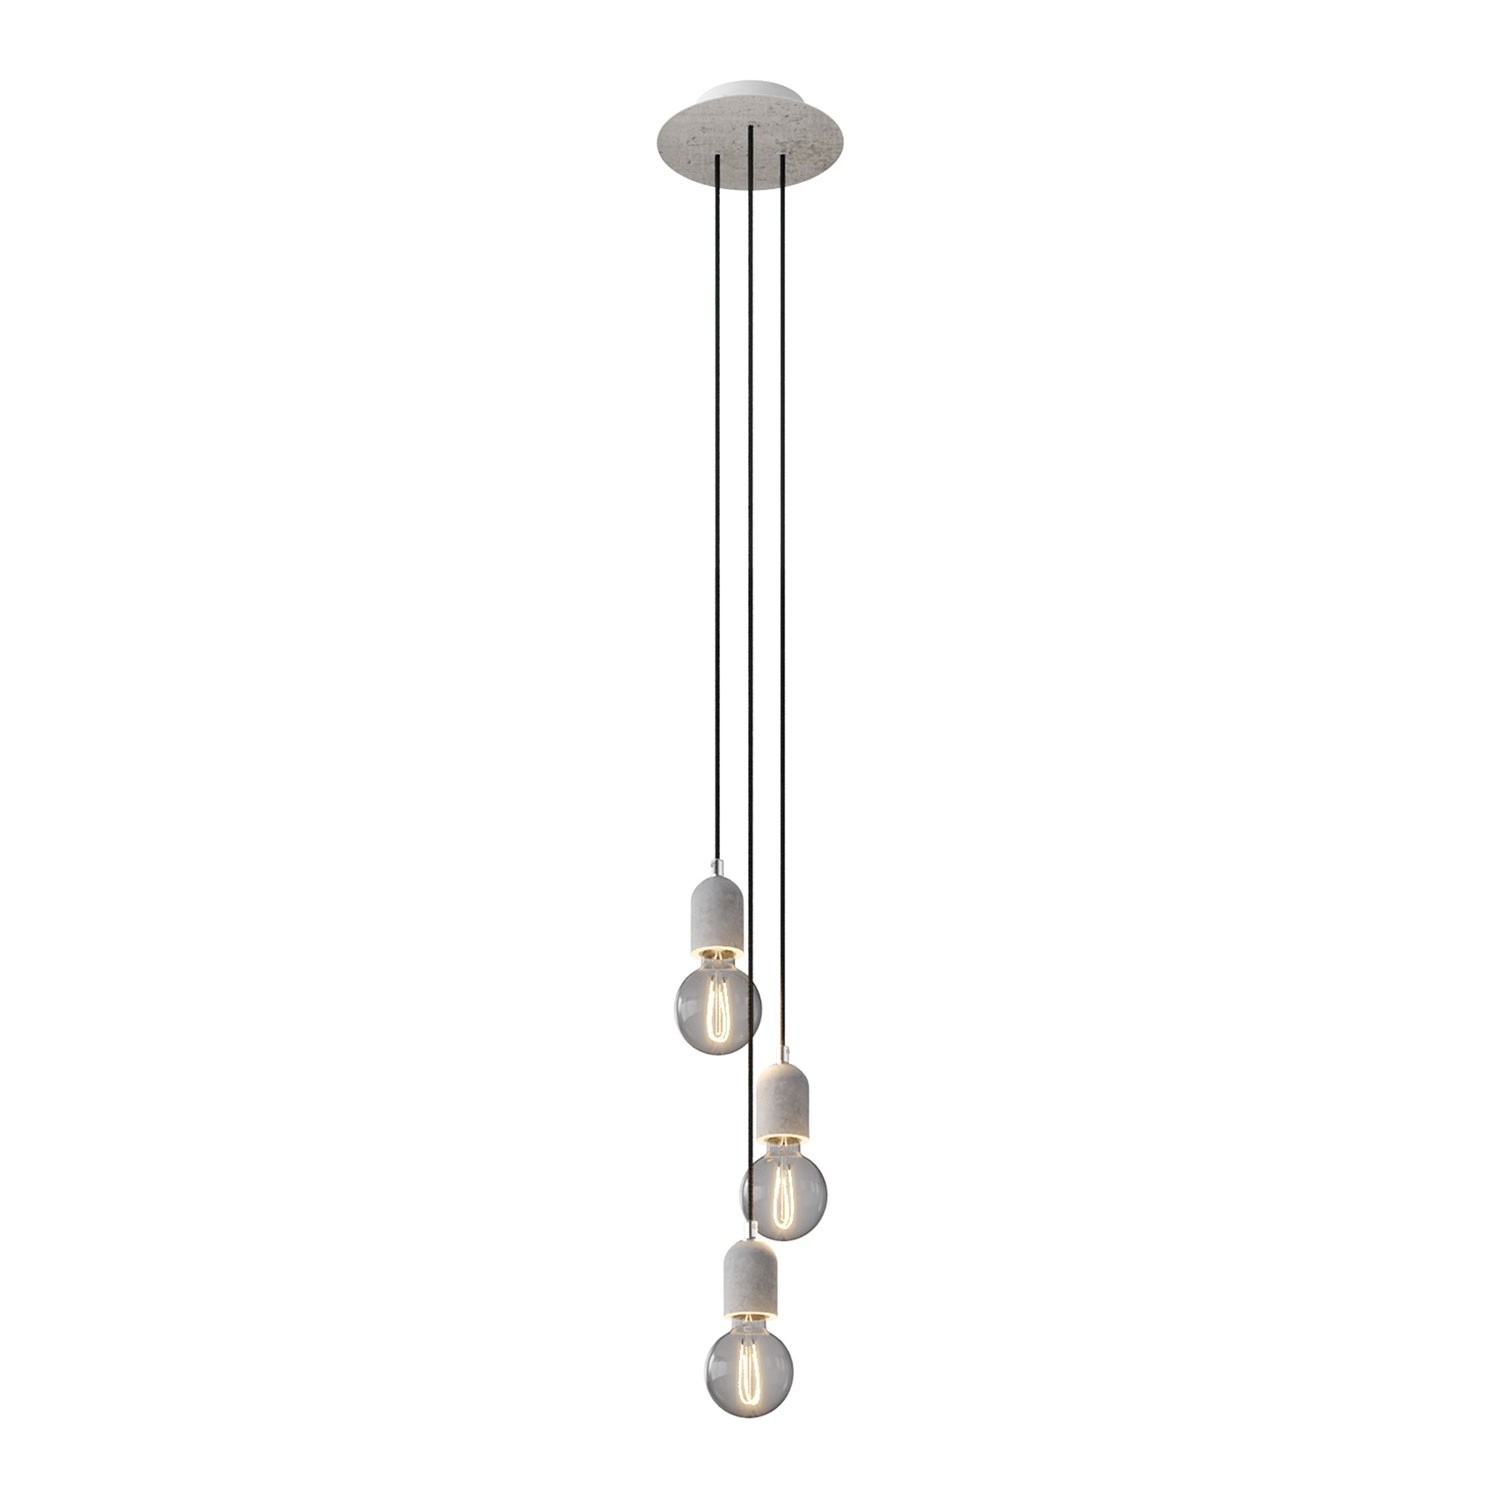 Lámpara colgante de 3 caídas con Rose-One redondo de 200 mm completa con cable textil y acabados en hormigón